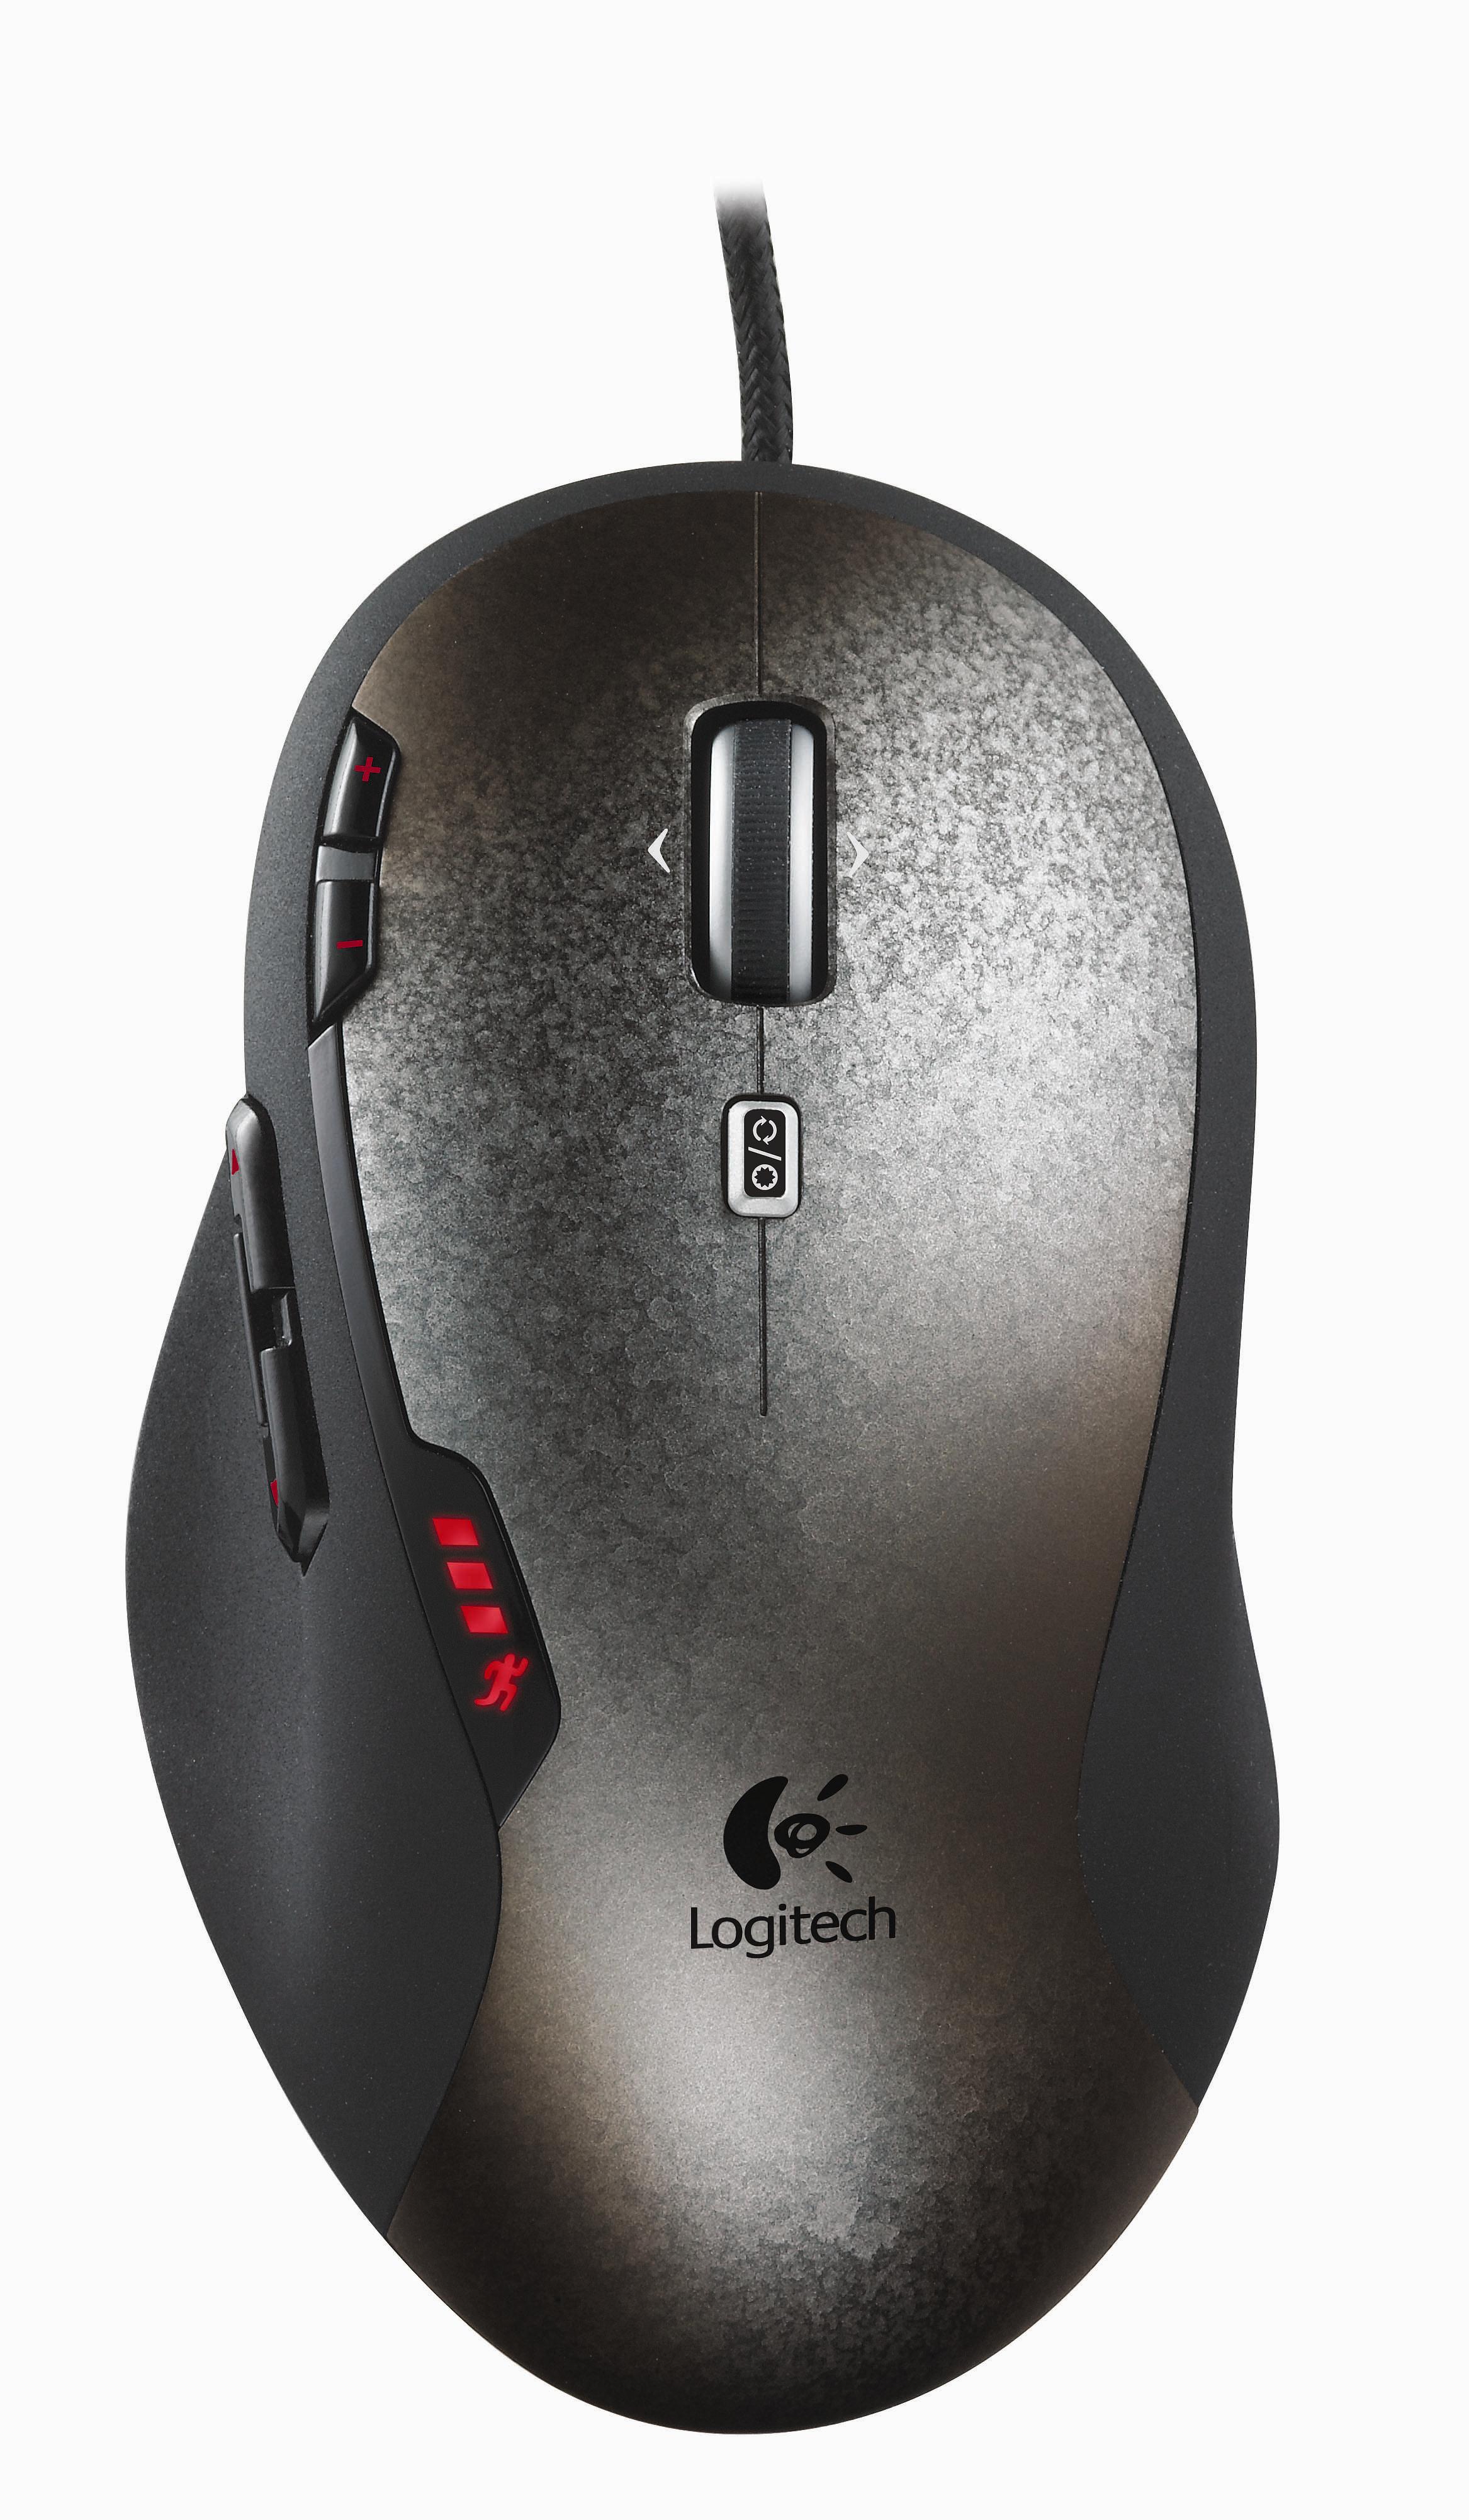 游戏鼠标Logitech G600使用寿命长且质量高